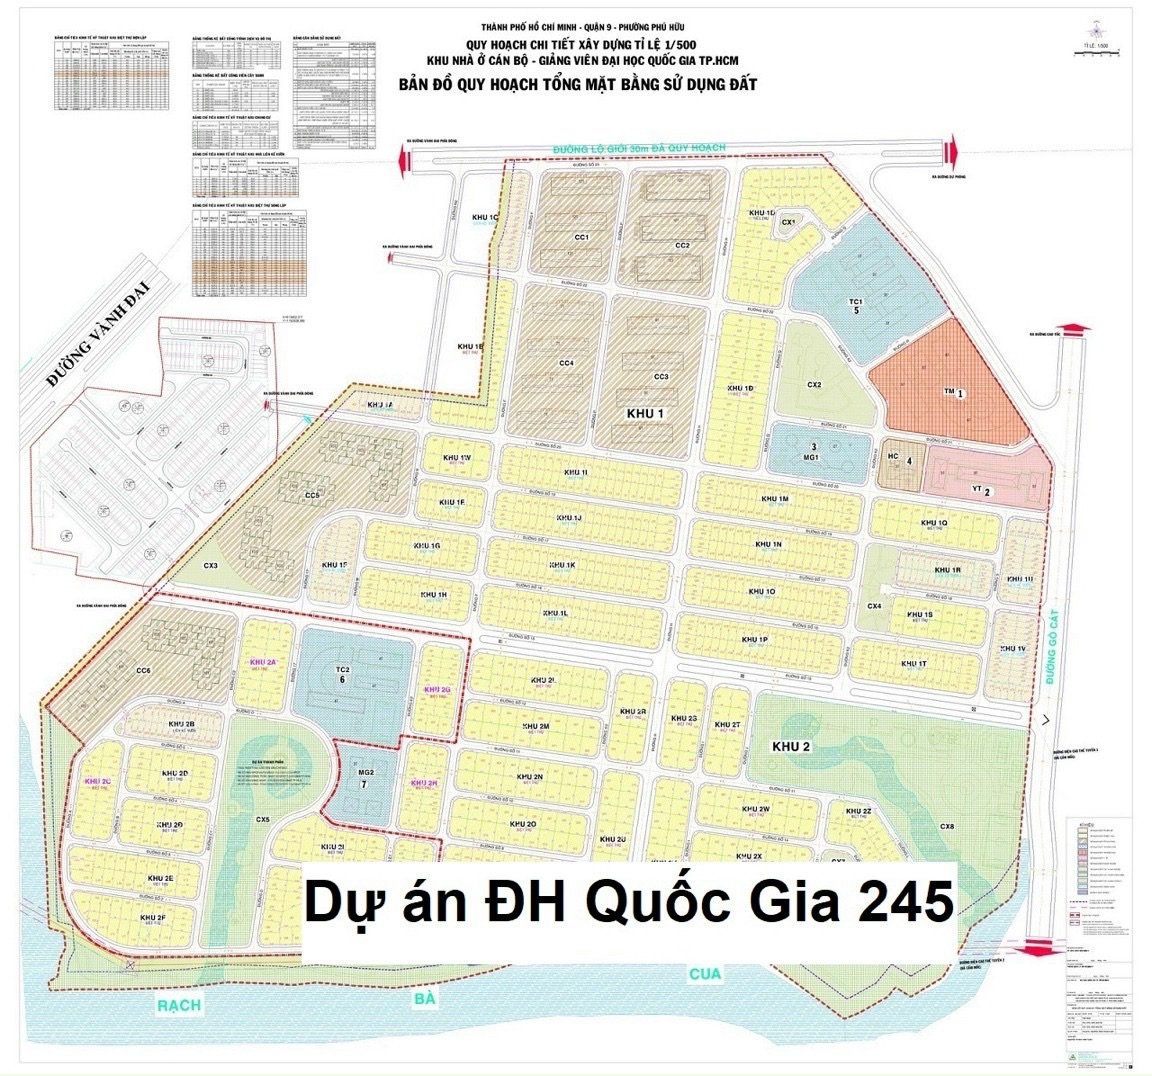 Chính chủ bán đất đường Gò Cát và 882 dự án mới ĐH Quốc Gia 245 phường Phú Hữu Quận 9 chờ sổ đỏ